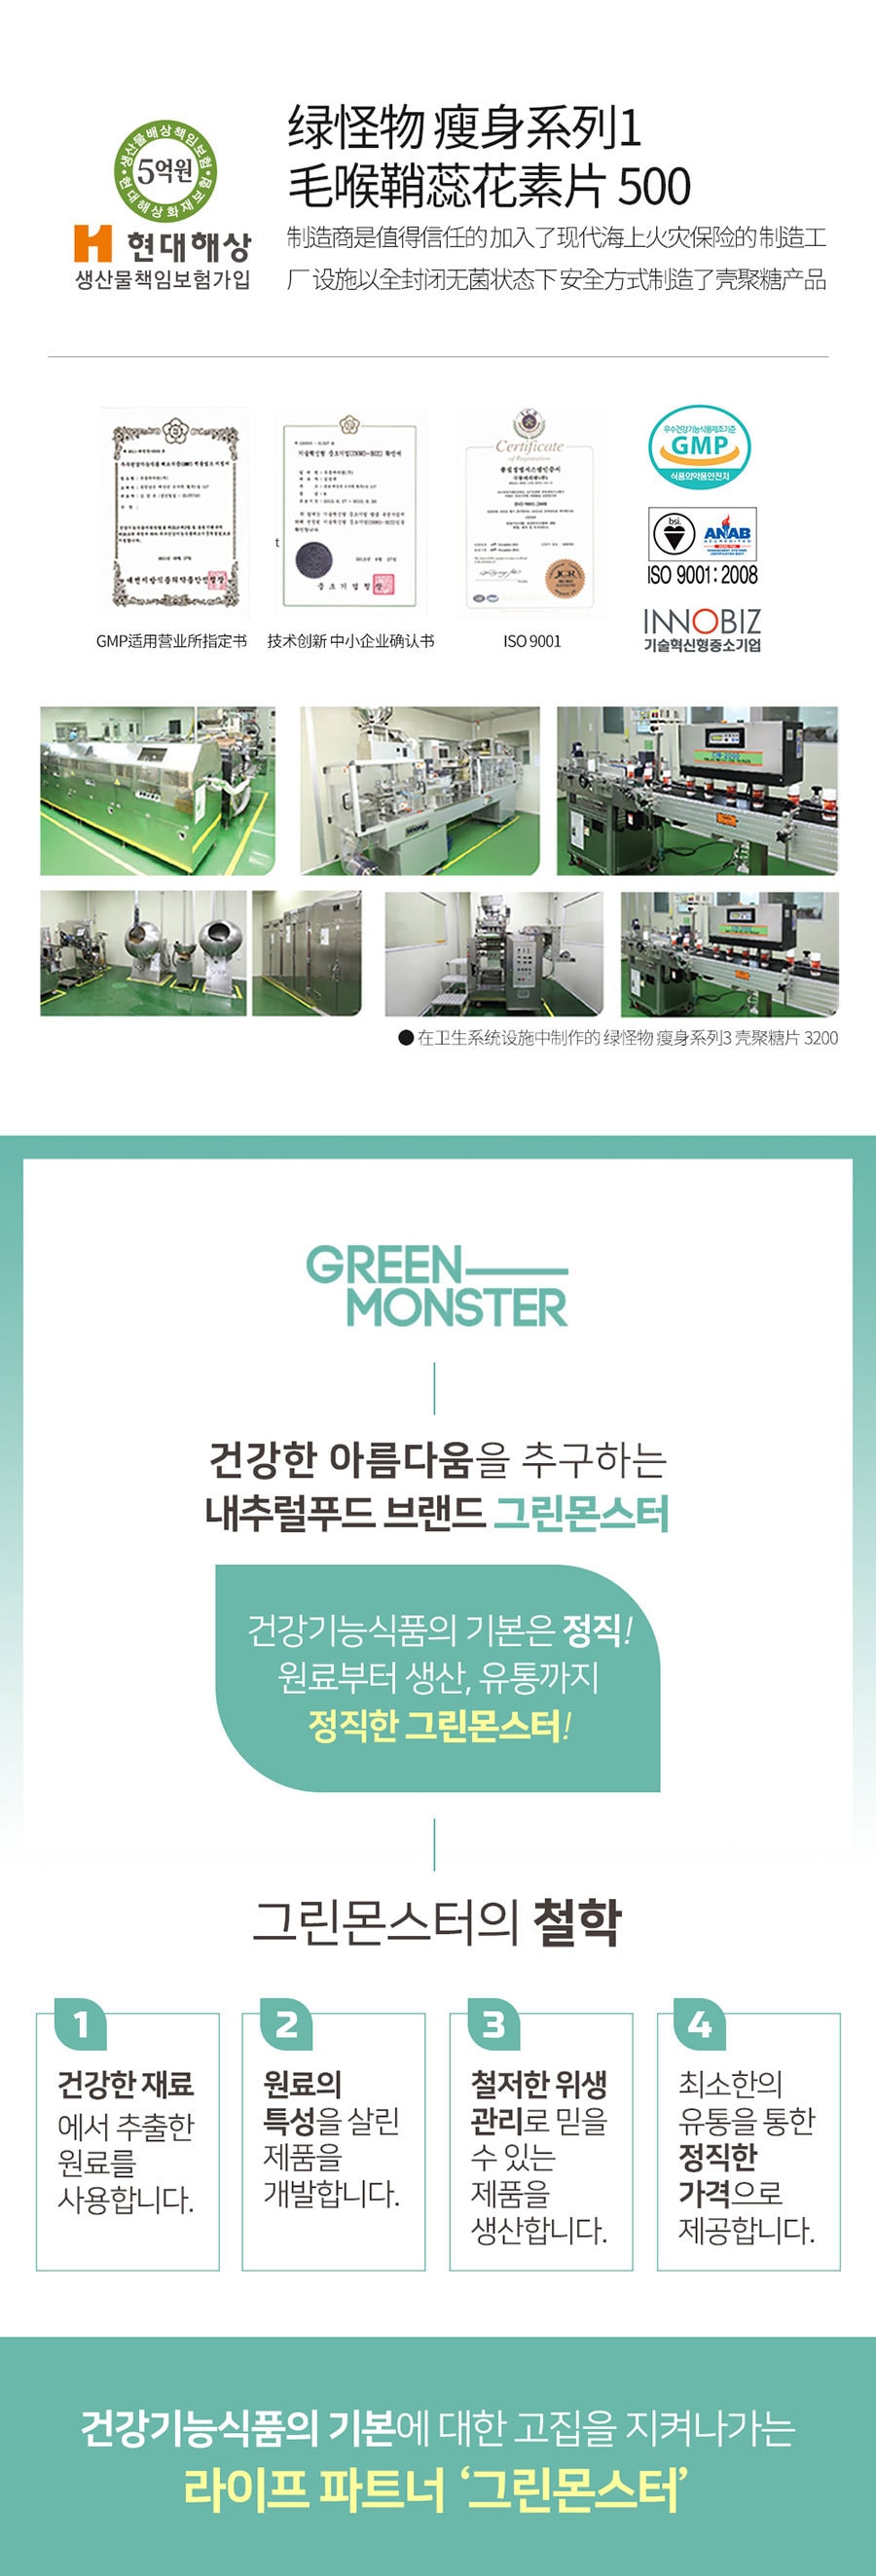 韩国 [Green Monster] 瘦身系列 1 毛喉鞘蕊花素片 500 - 28 Tablets